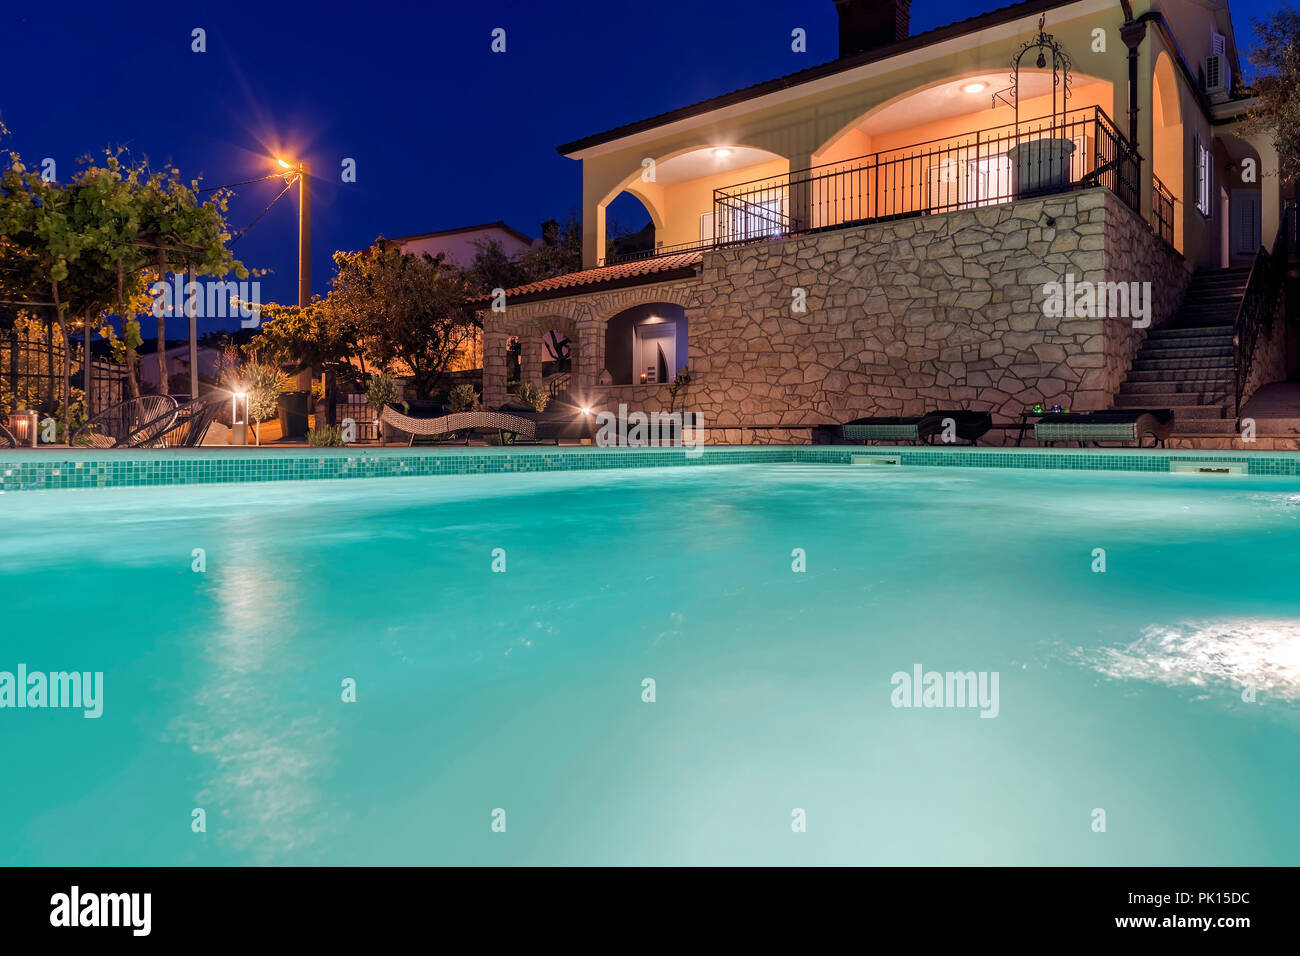 Maison de vacances avec piscine dans la nuit Banque D'Images